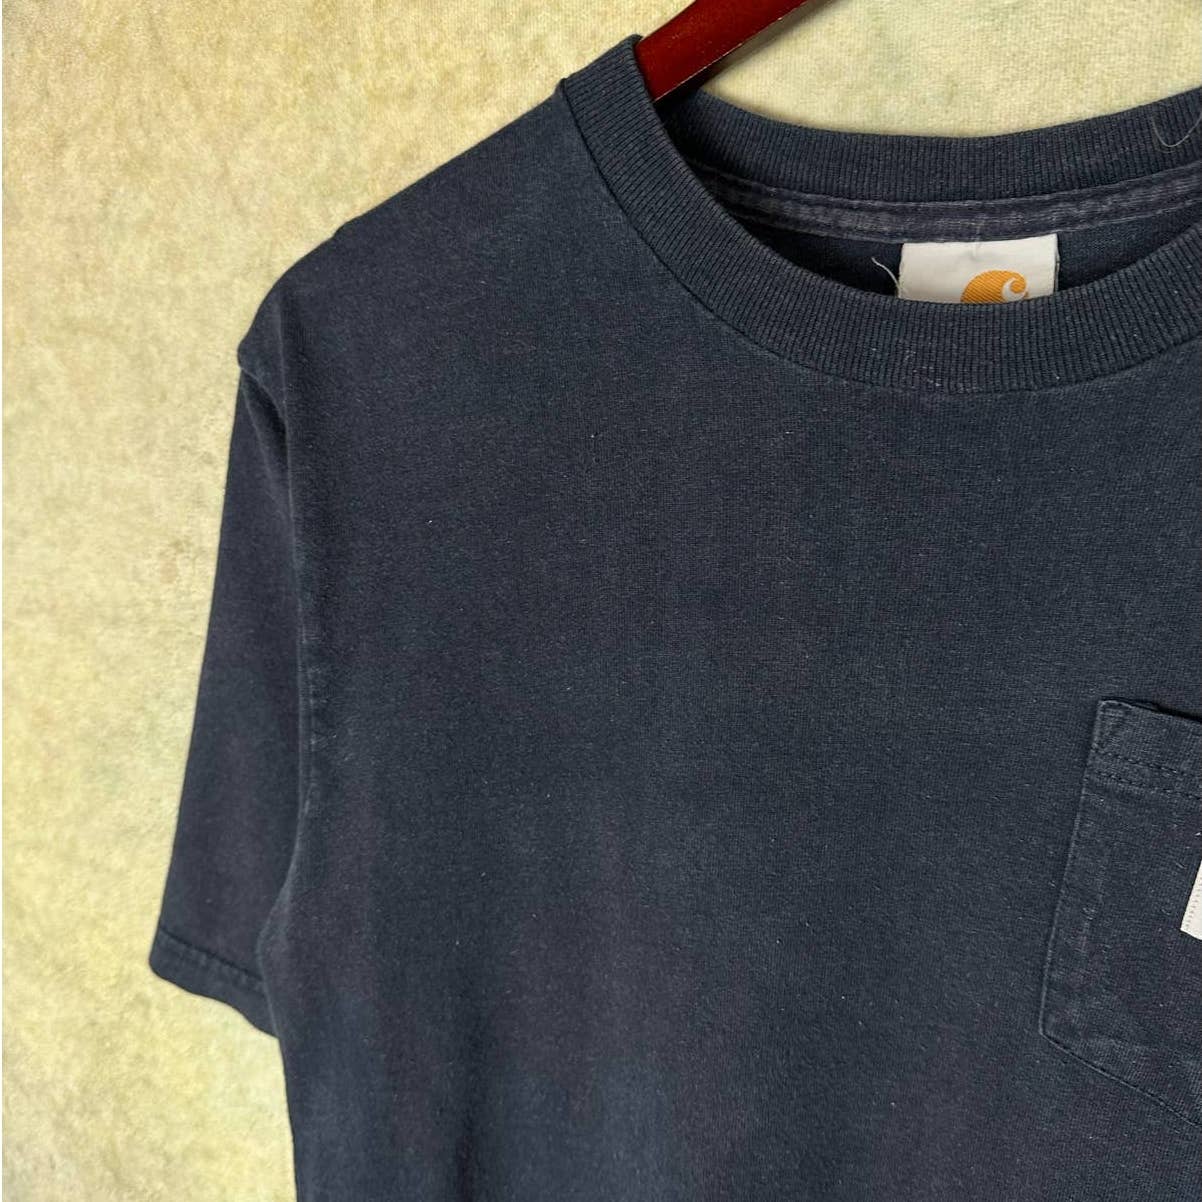 Vintage Carhartt Pocket T Shirt S